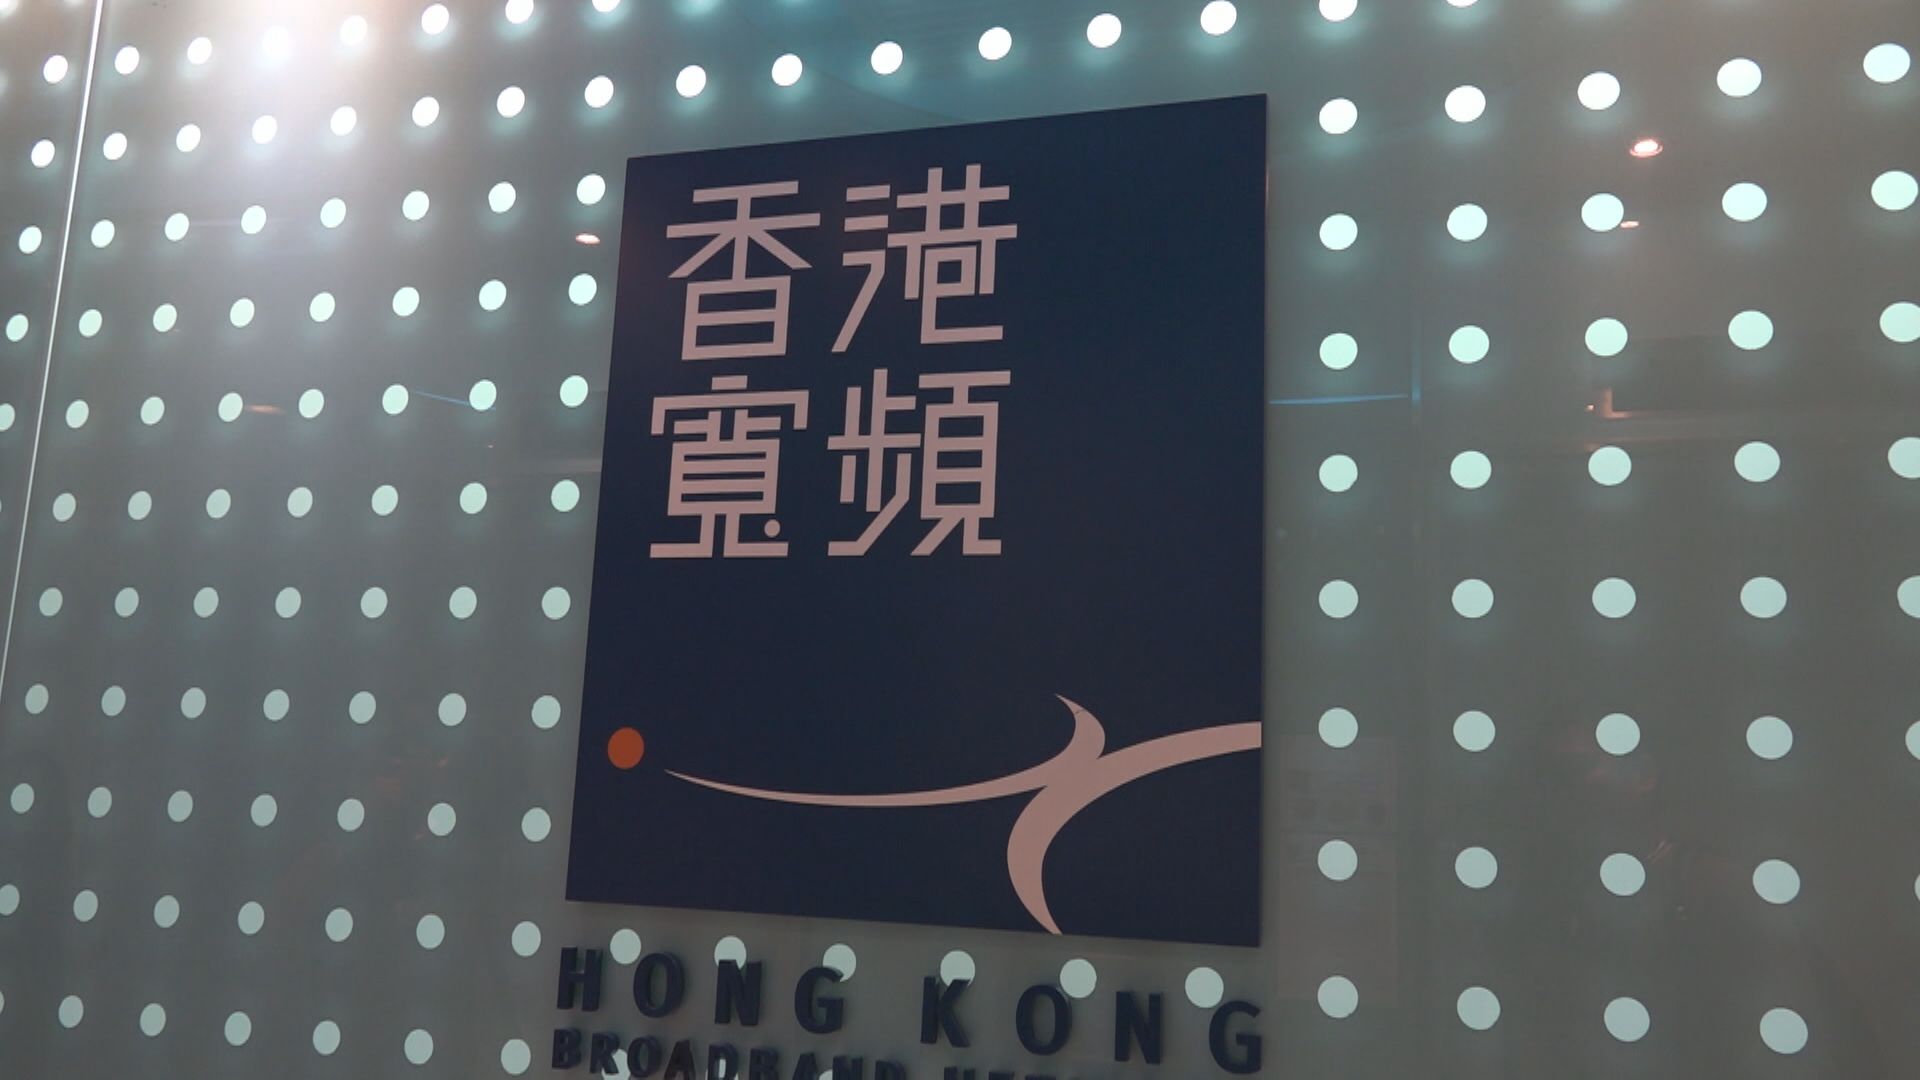 【急升後突停牌】彭博:香港寬頻獲HGC提全購 估值逾78億